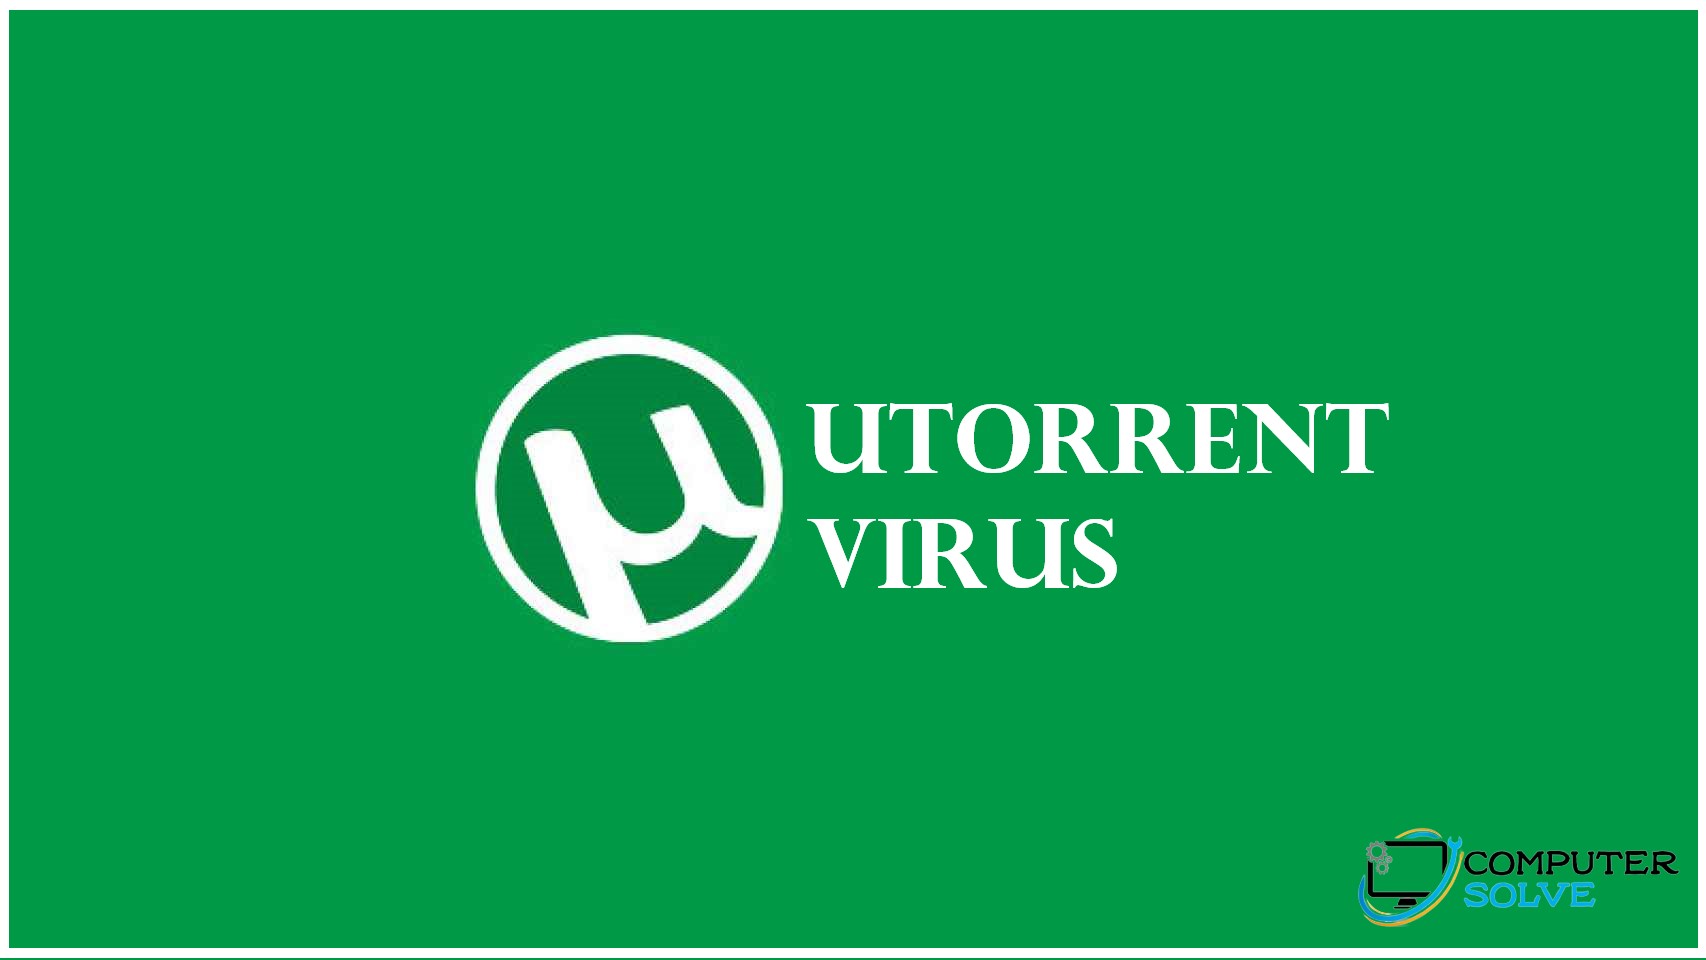 utorrent virus